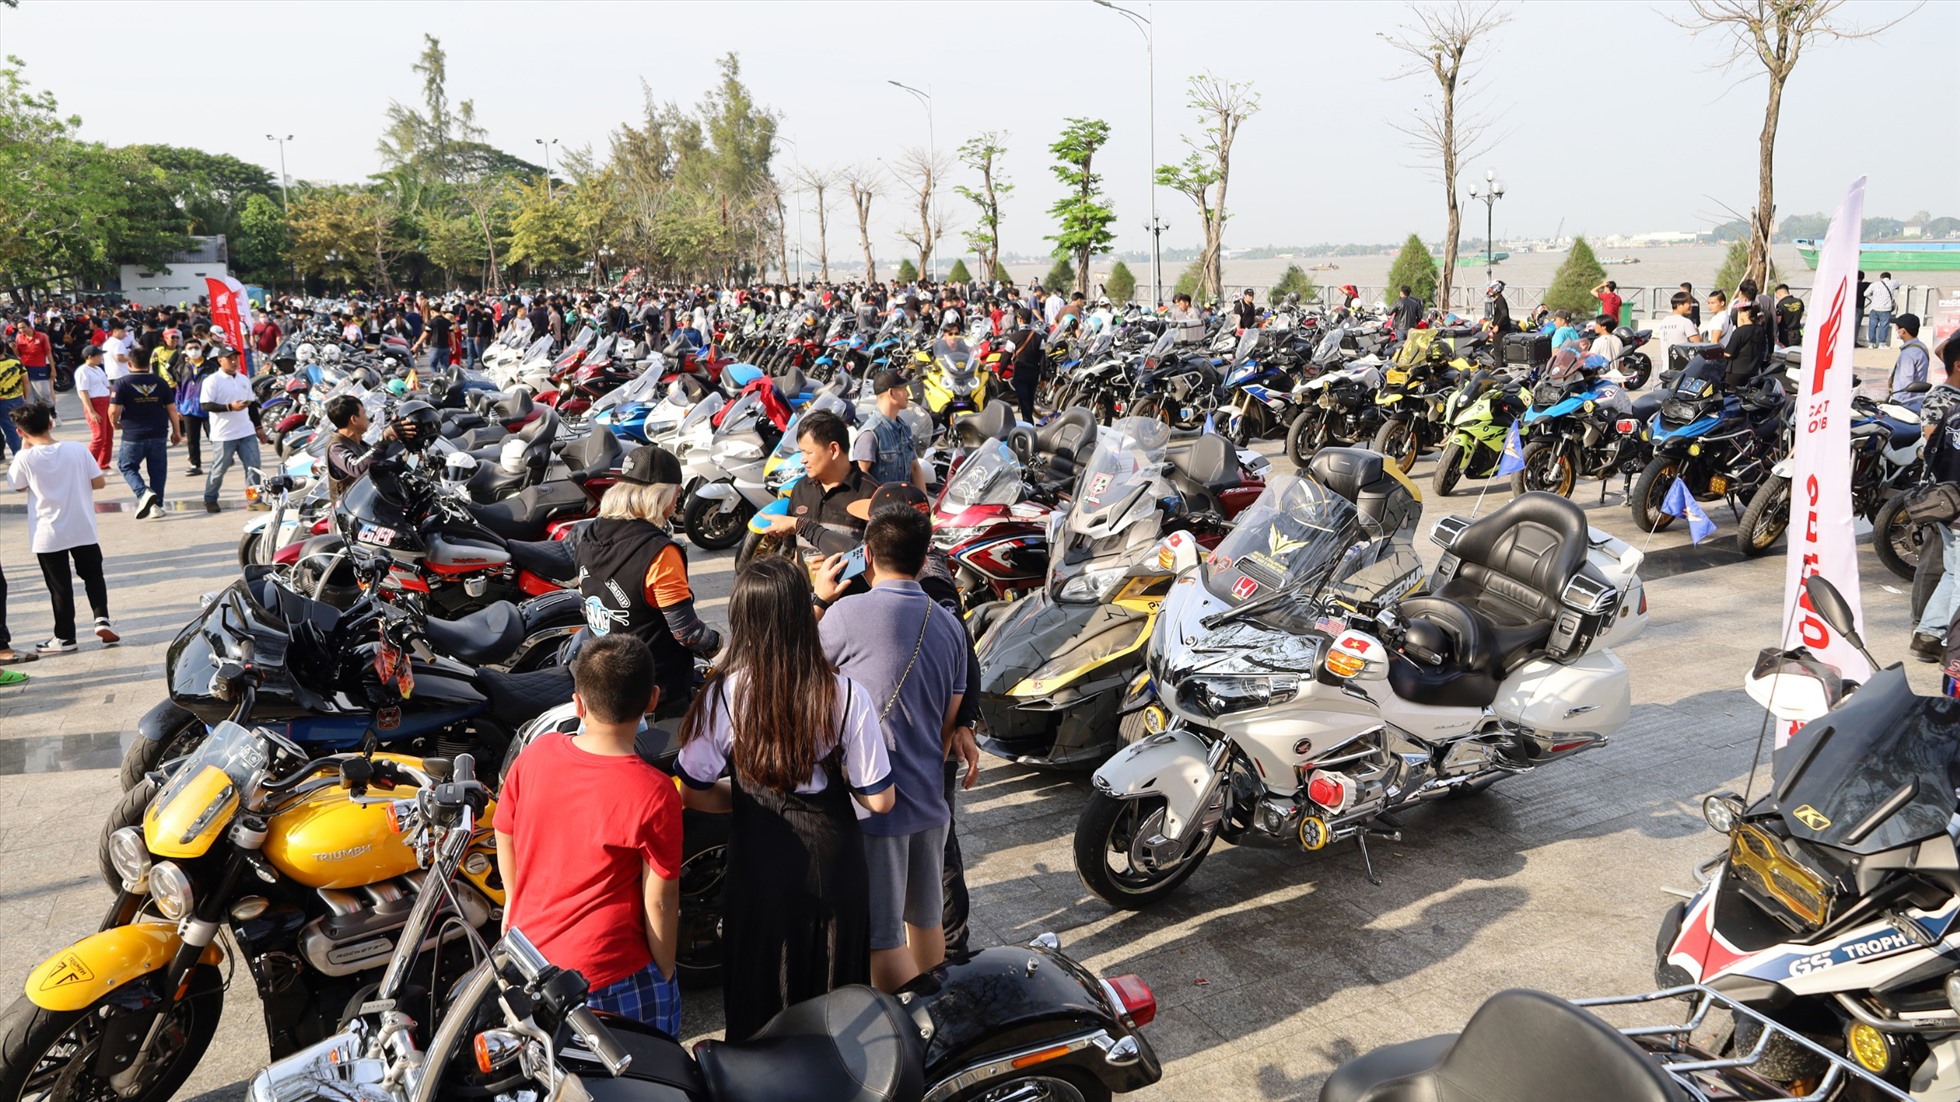 Chương trình nhằm kết nối, phát triển không gian hội họp, giao lưu văn hóa về xe dành cho những anh em “biker” có niềm đam mê mãnh liệt với xe phân khối lớn tại Việt Nam, đồng thời tạo cơ hội hình thành nét đẹp của những “biker”.